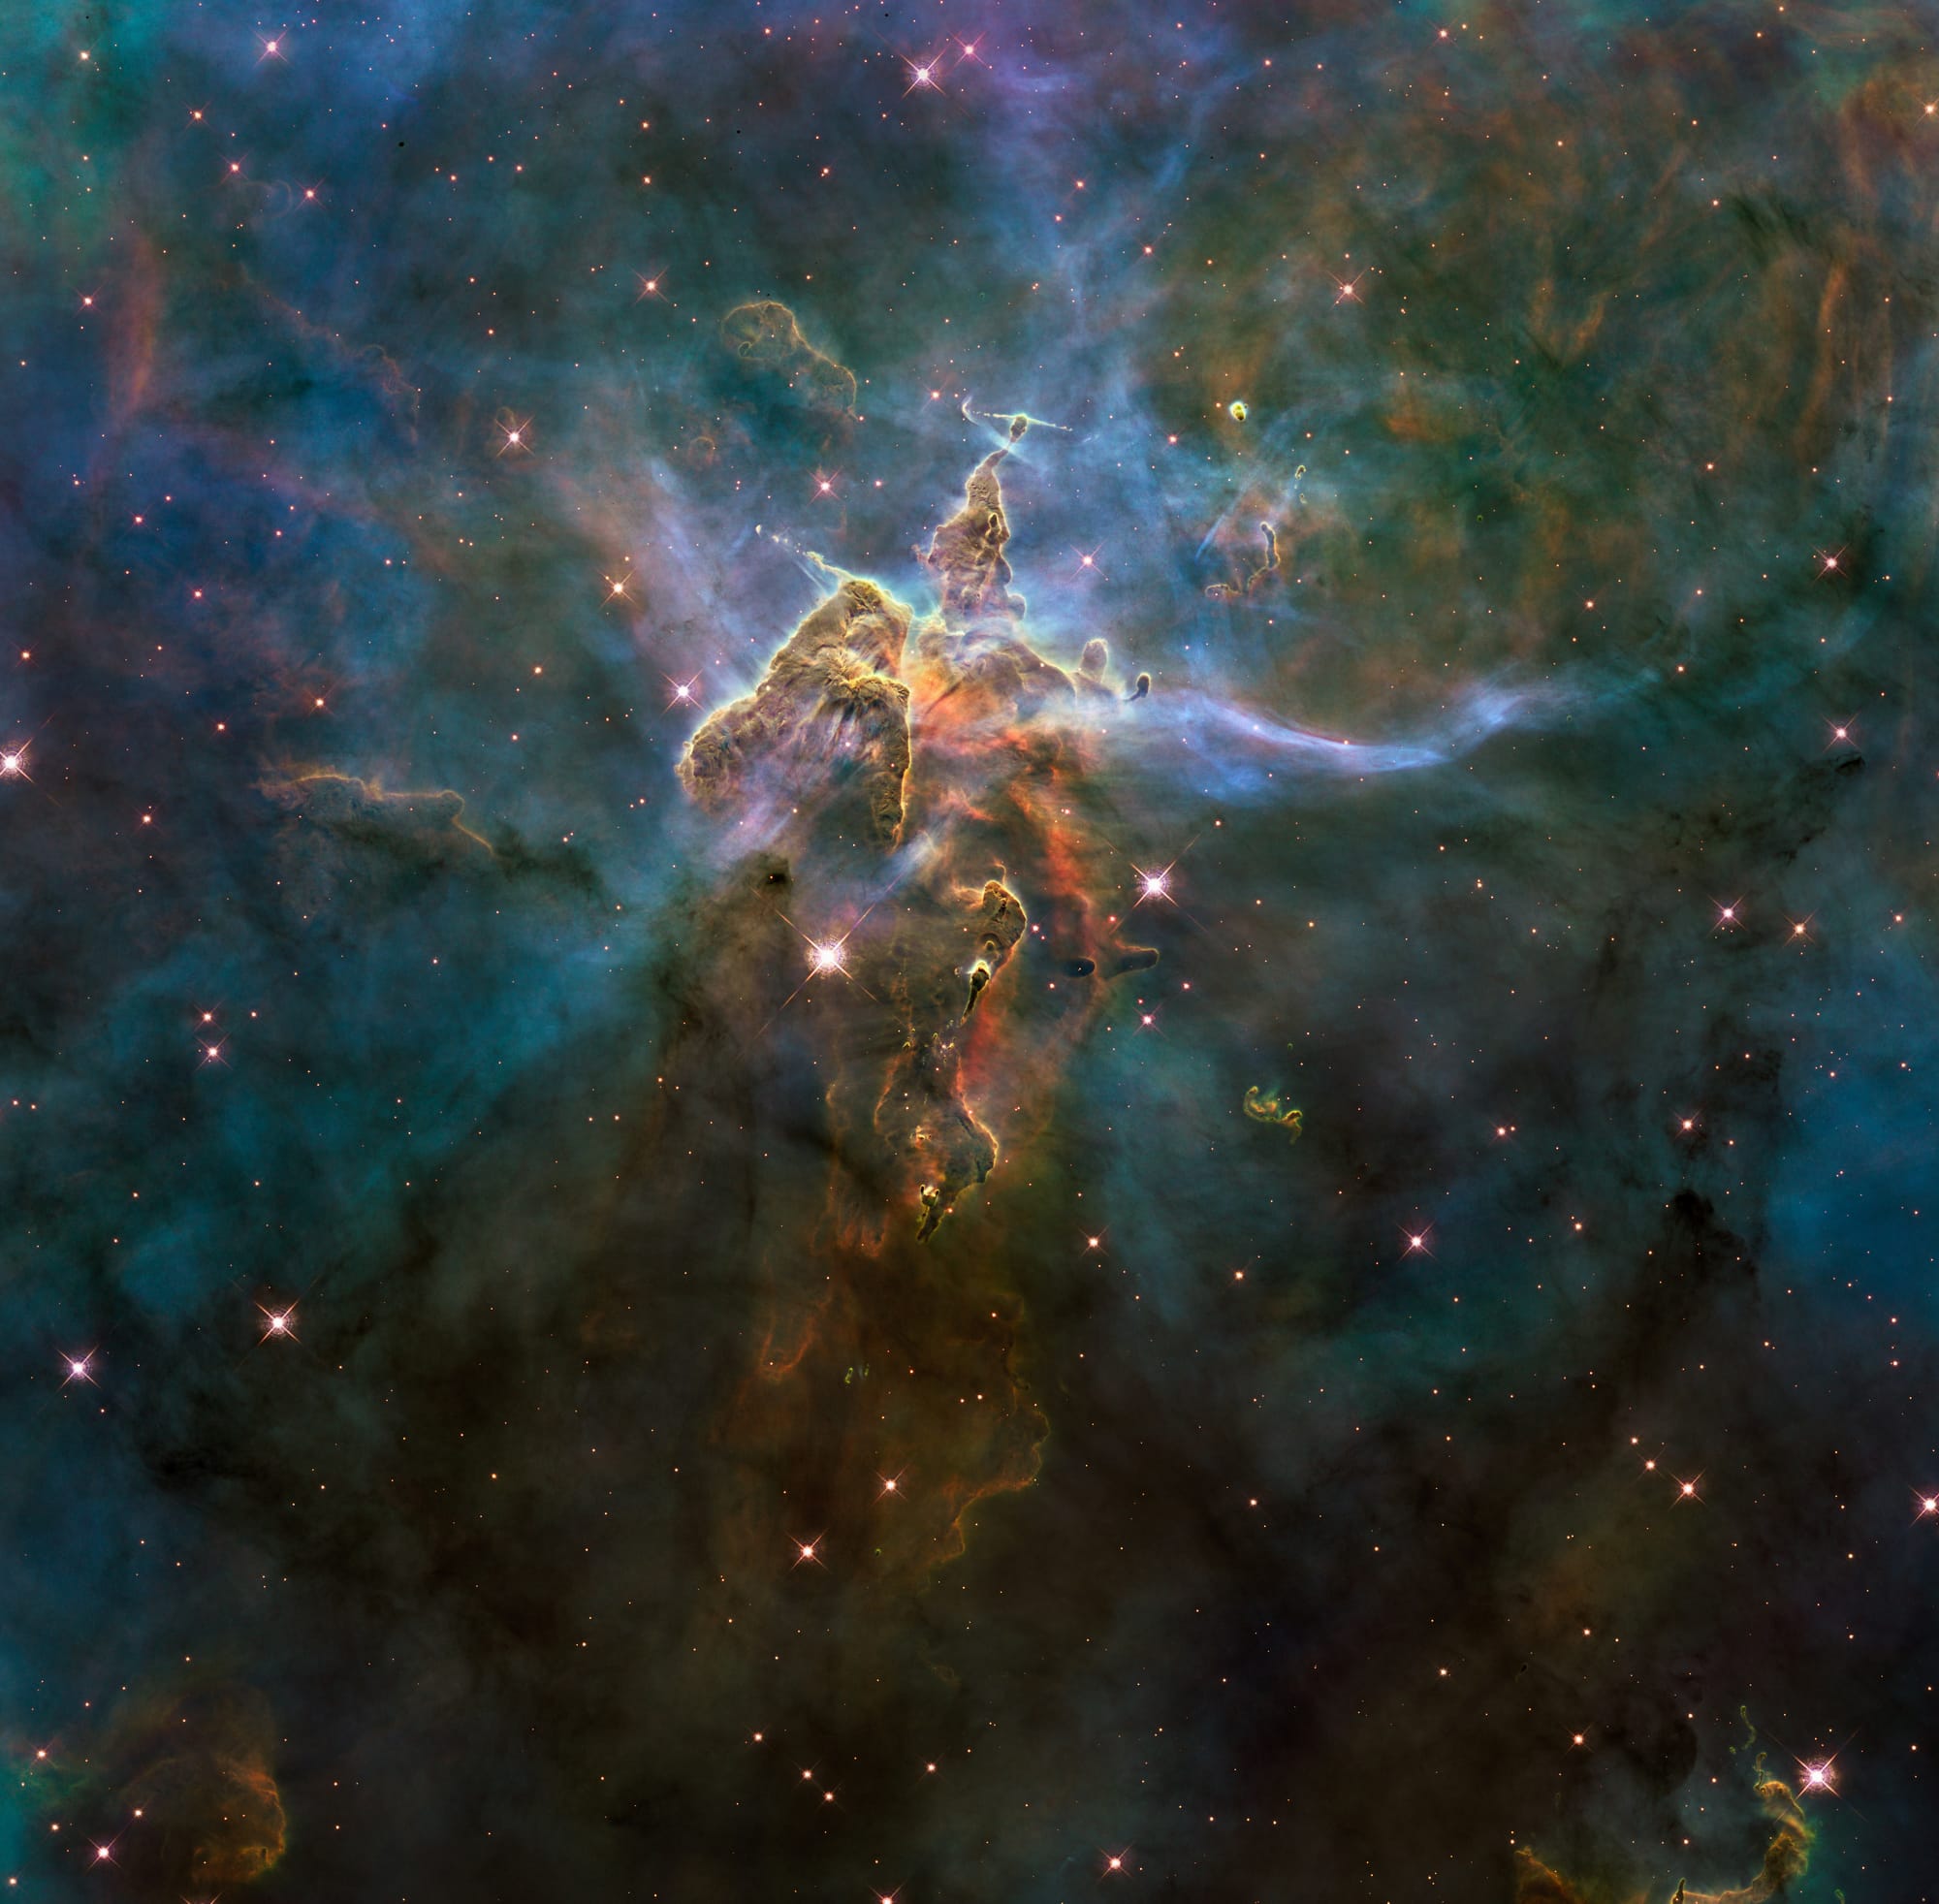 NASA's Hubble Space Telescope is on Unsplash